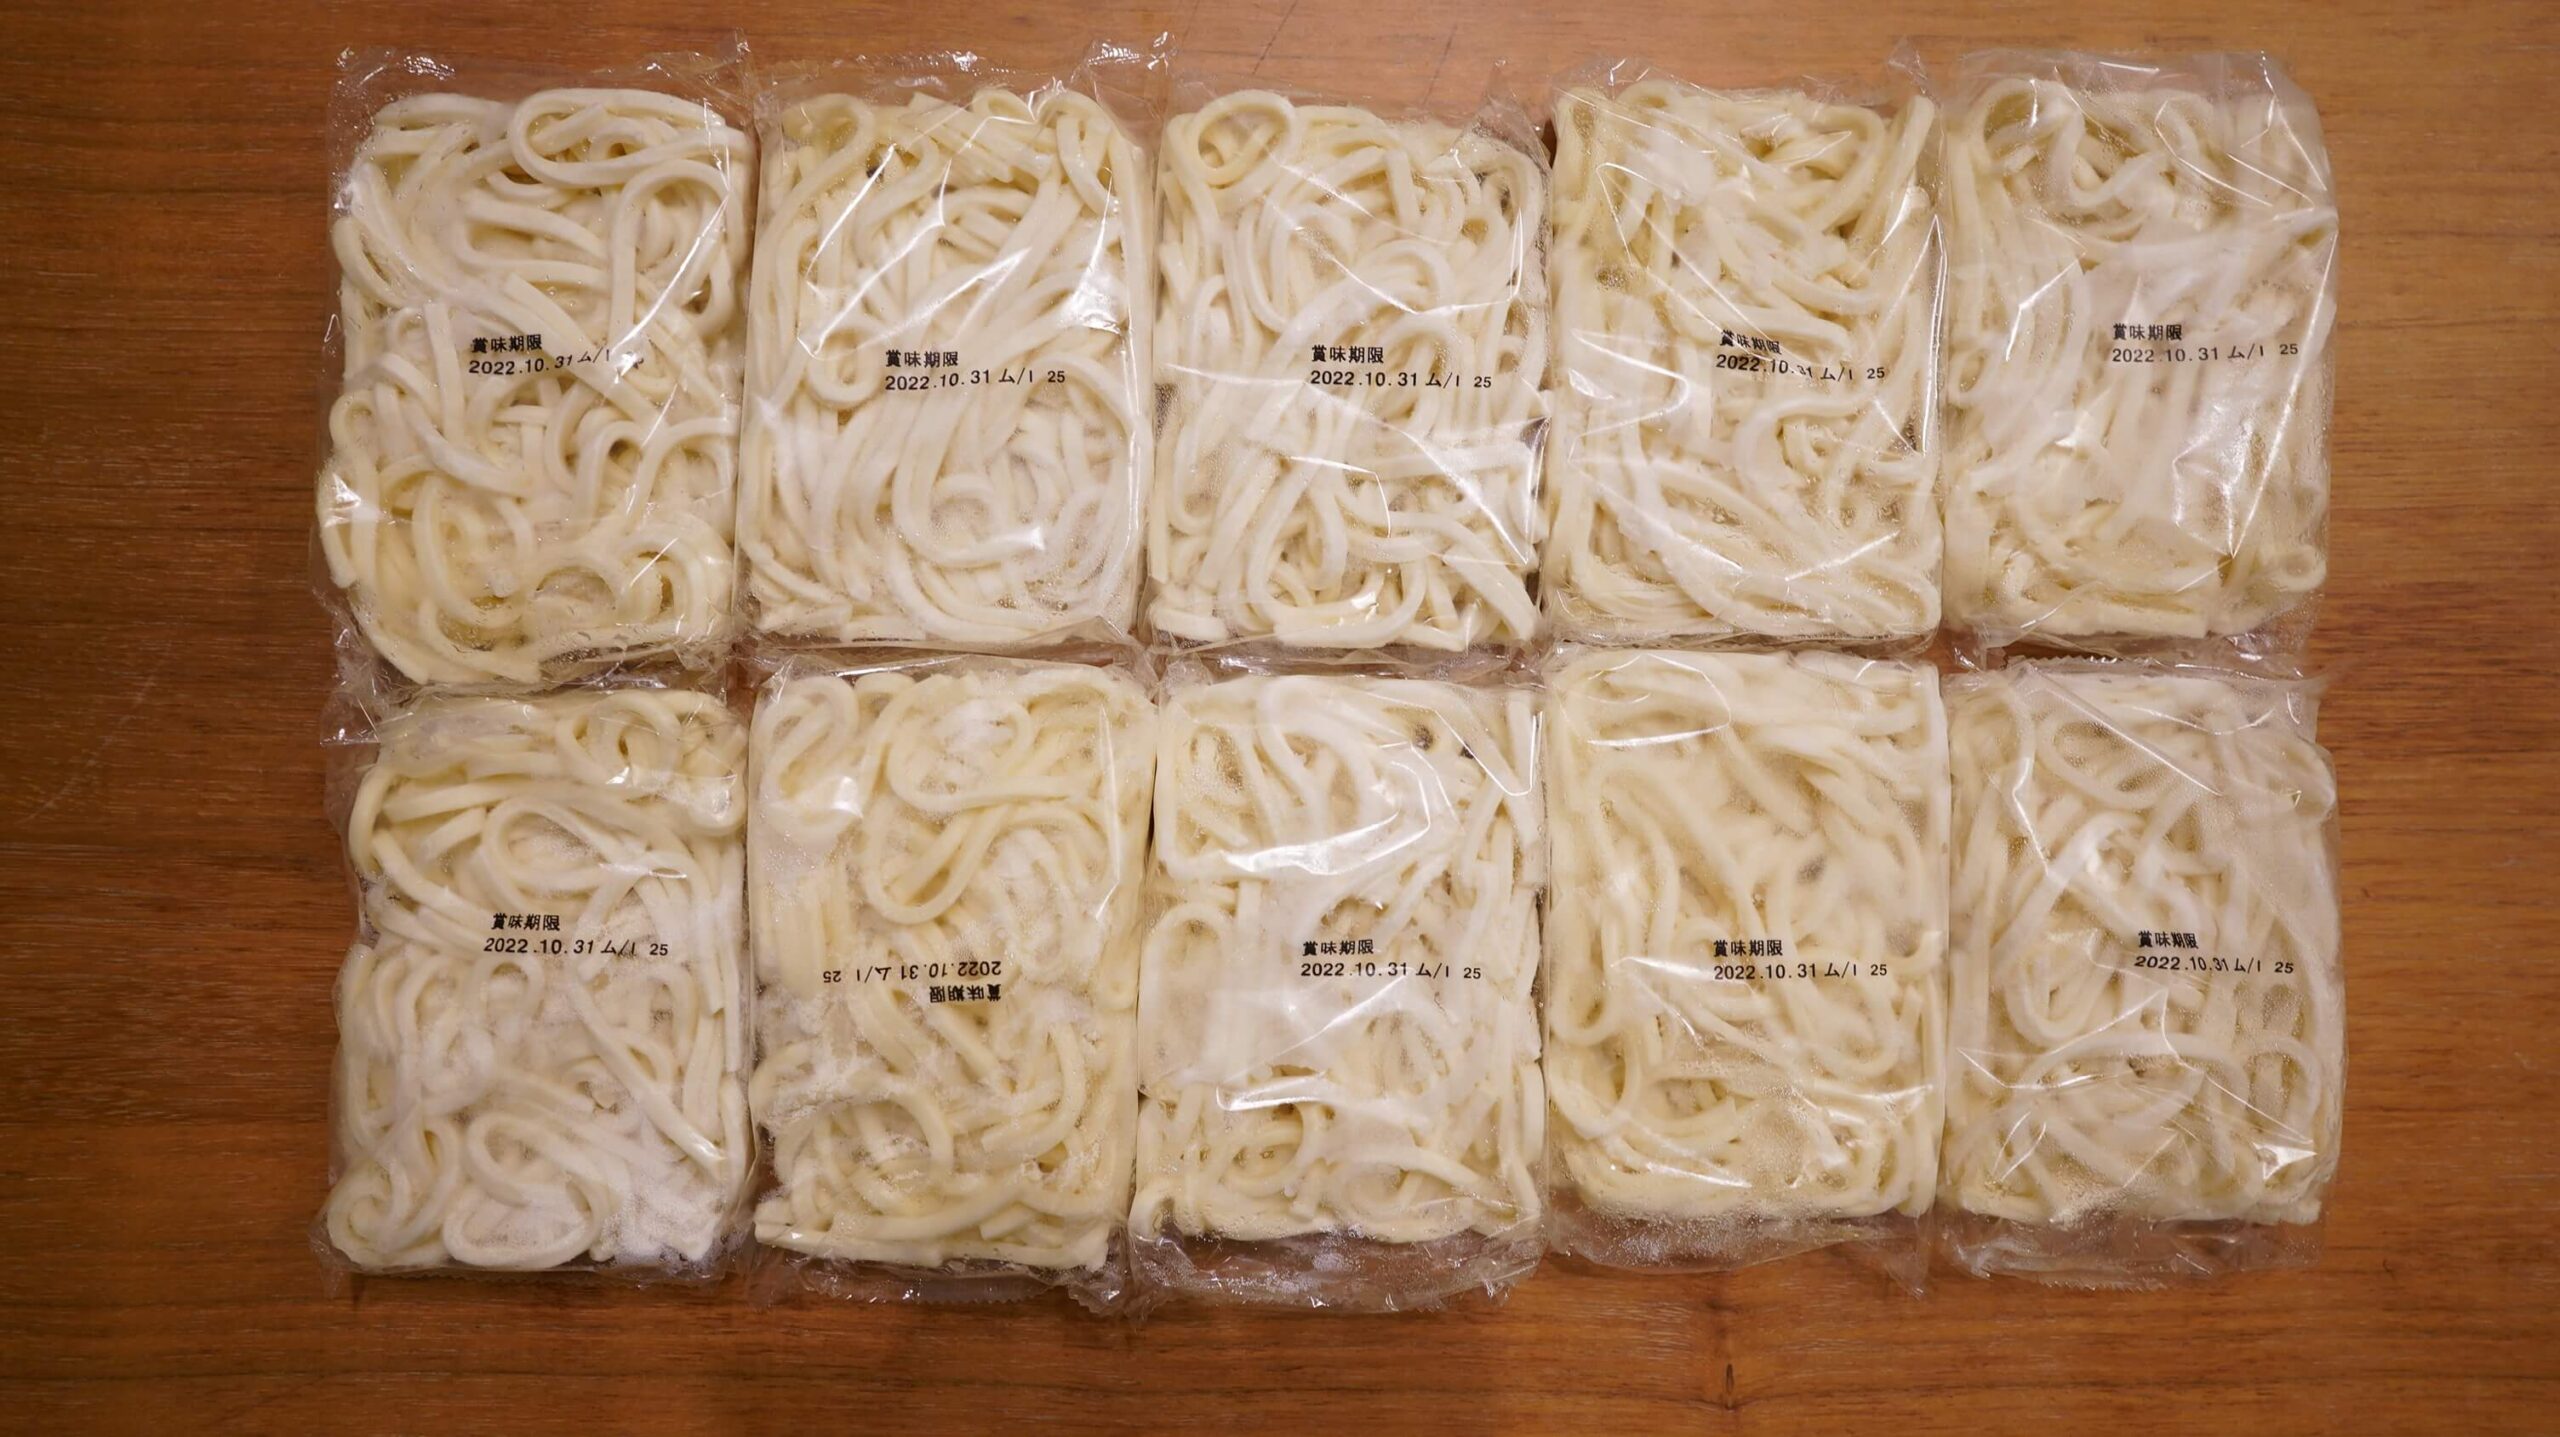 コストコの冷凍食品「さぬきうどん」の中身の写真